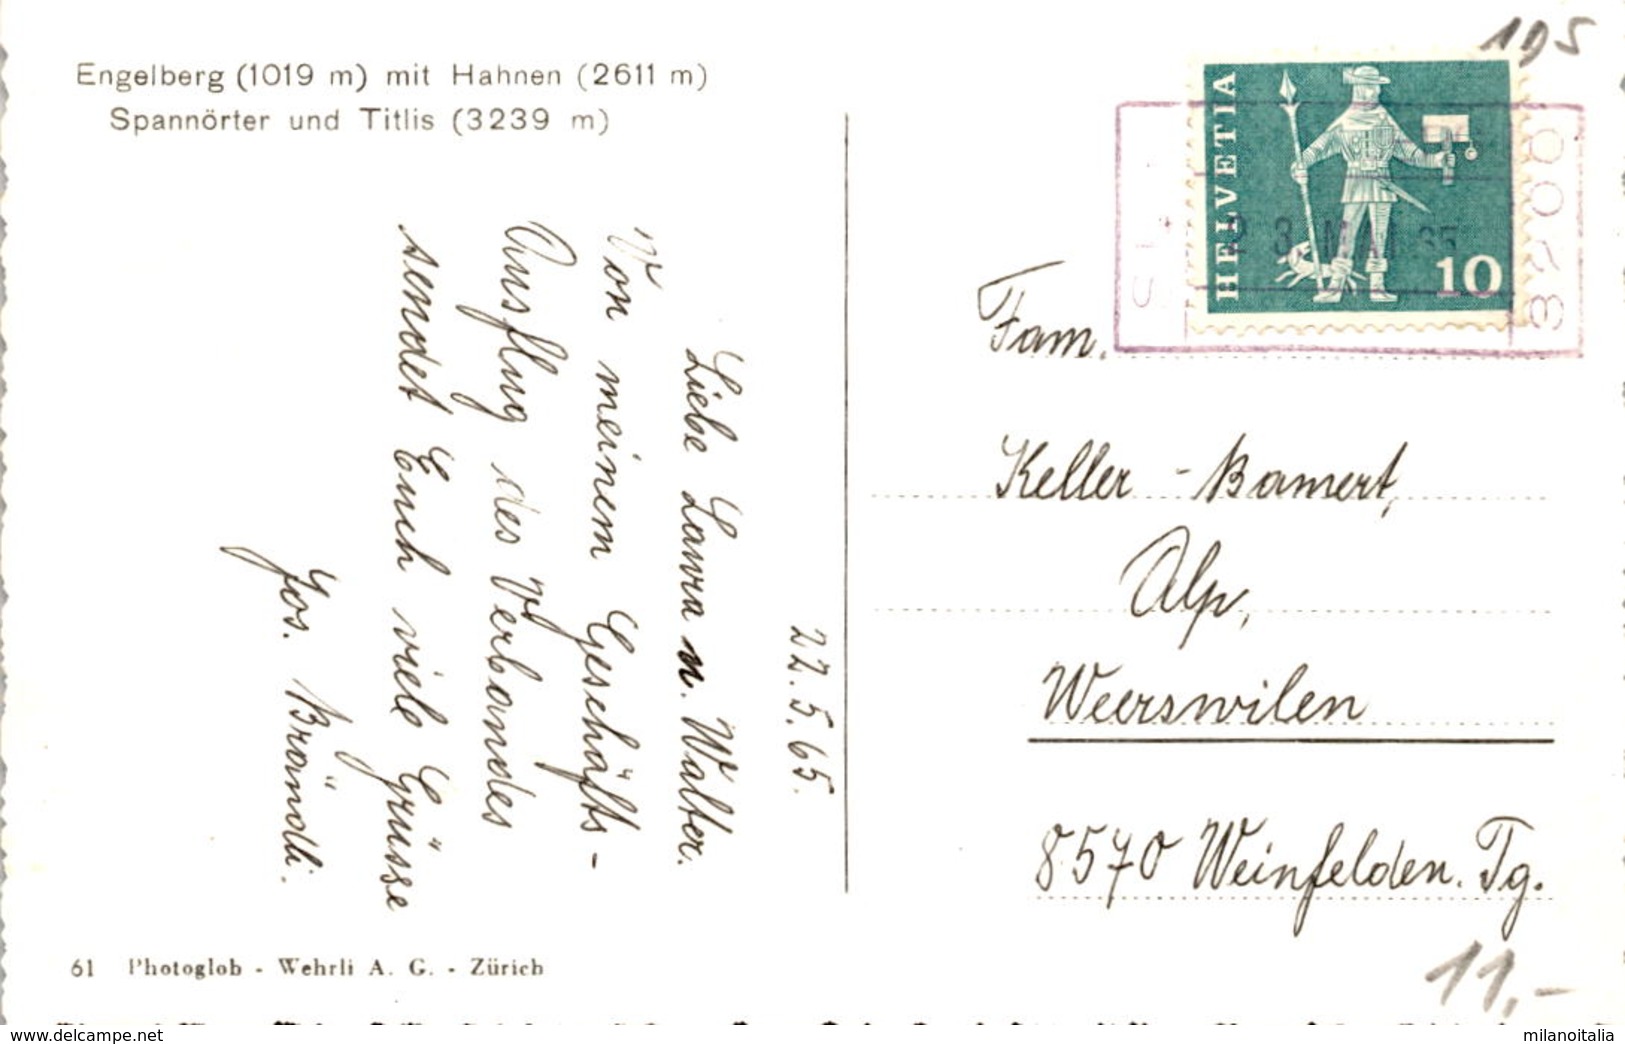 Engelberg Mit Hahnen, Spannörter Und Titlis (61) * 23. 5. 1965 - Engelberg